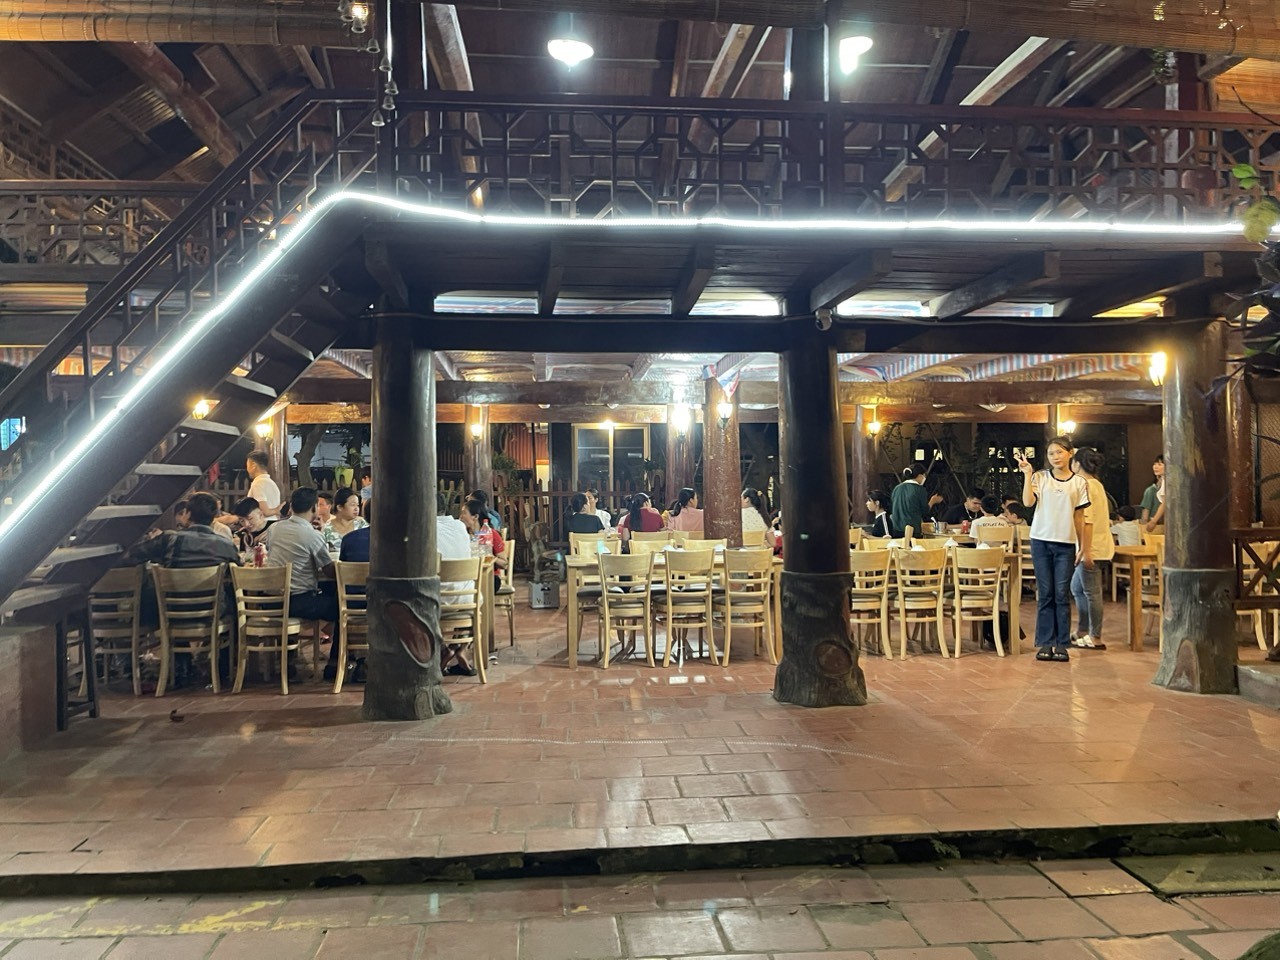 Nhà hàng Tây Bắc – Thế giới mỹ vị của đặc sản Dê núi